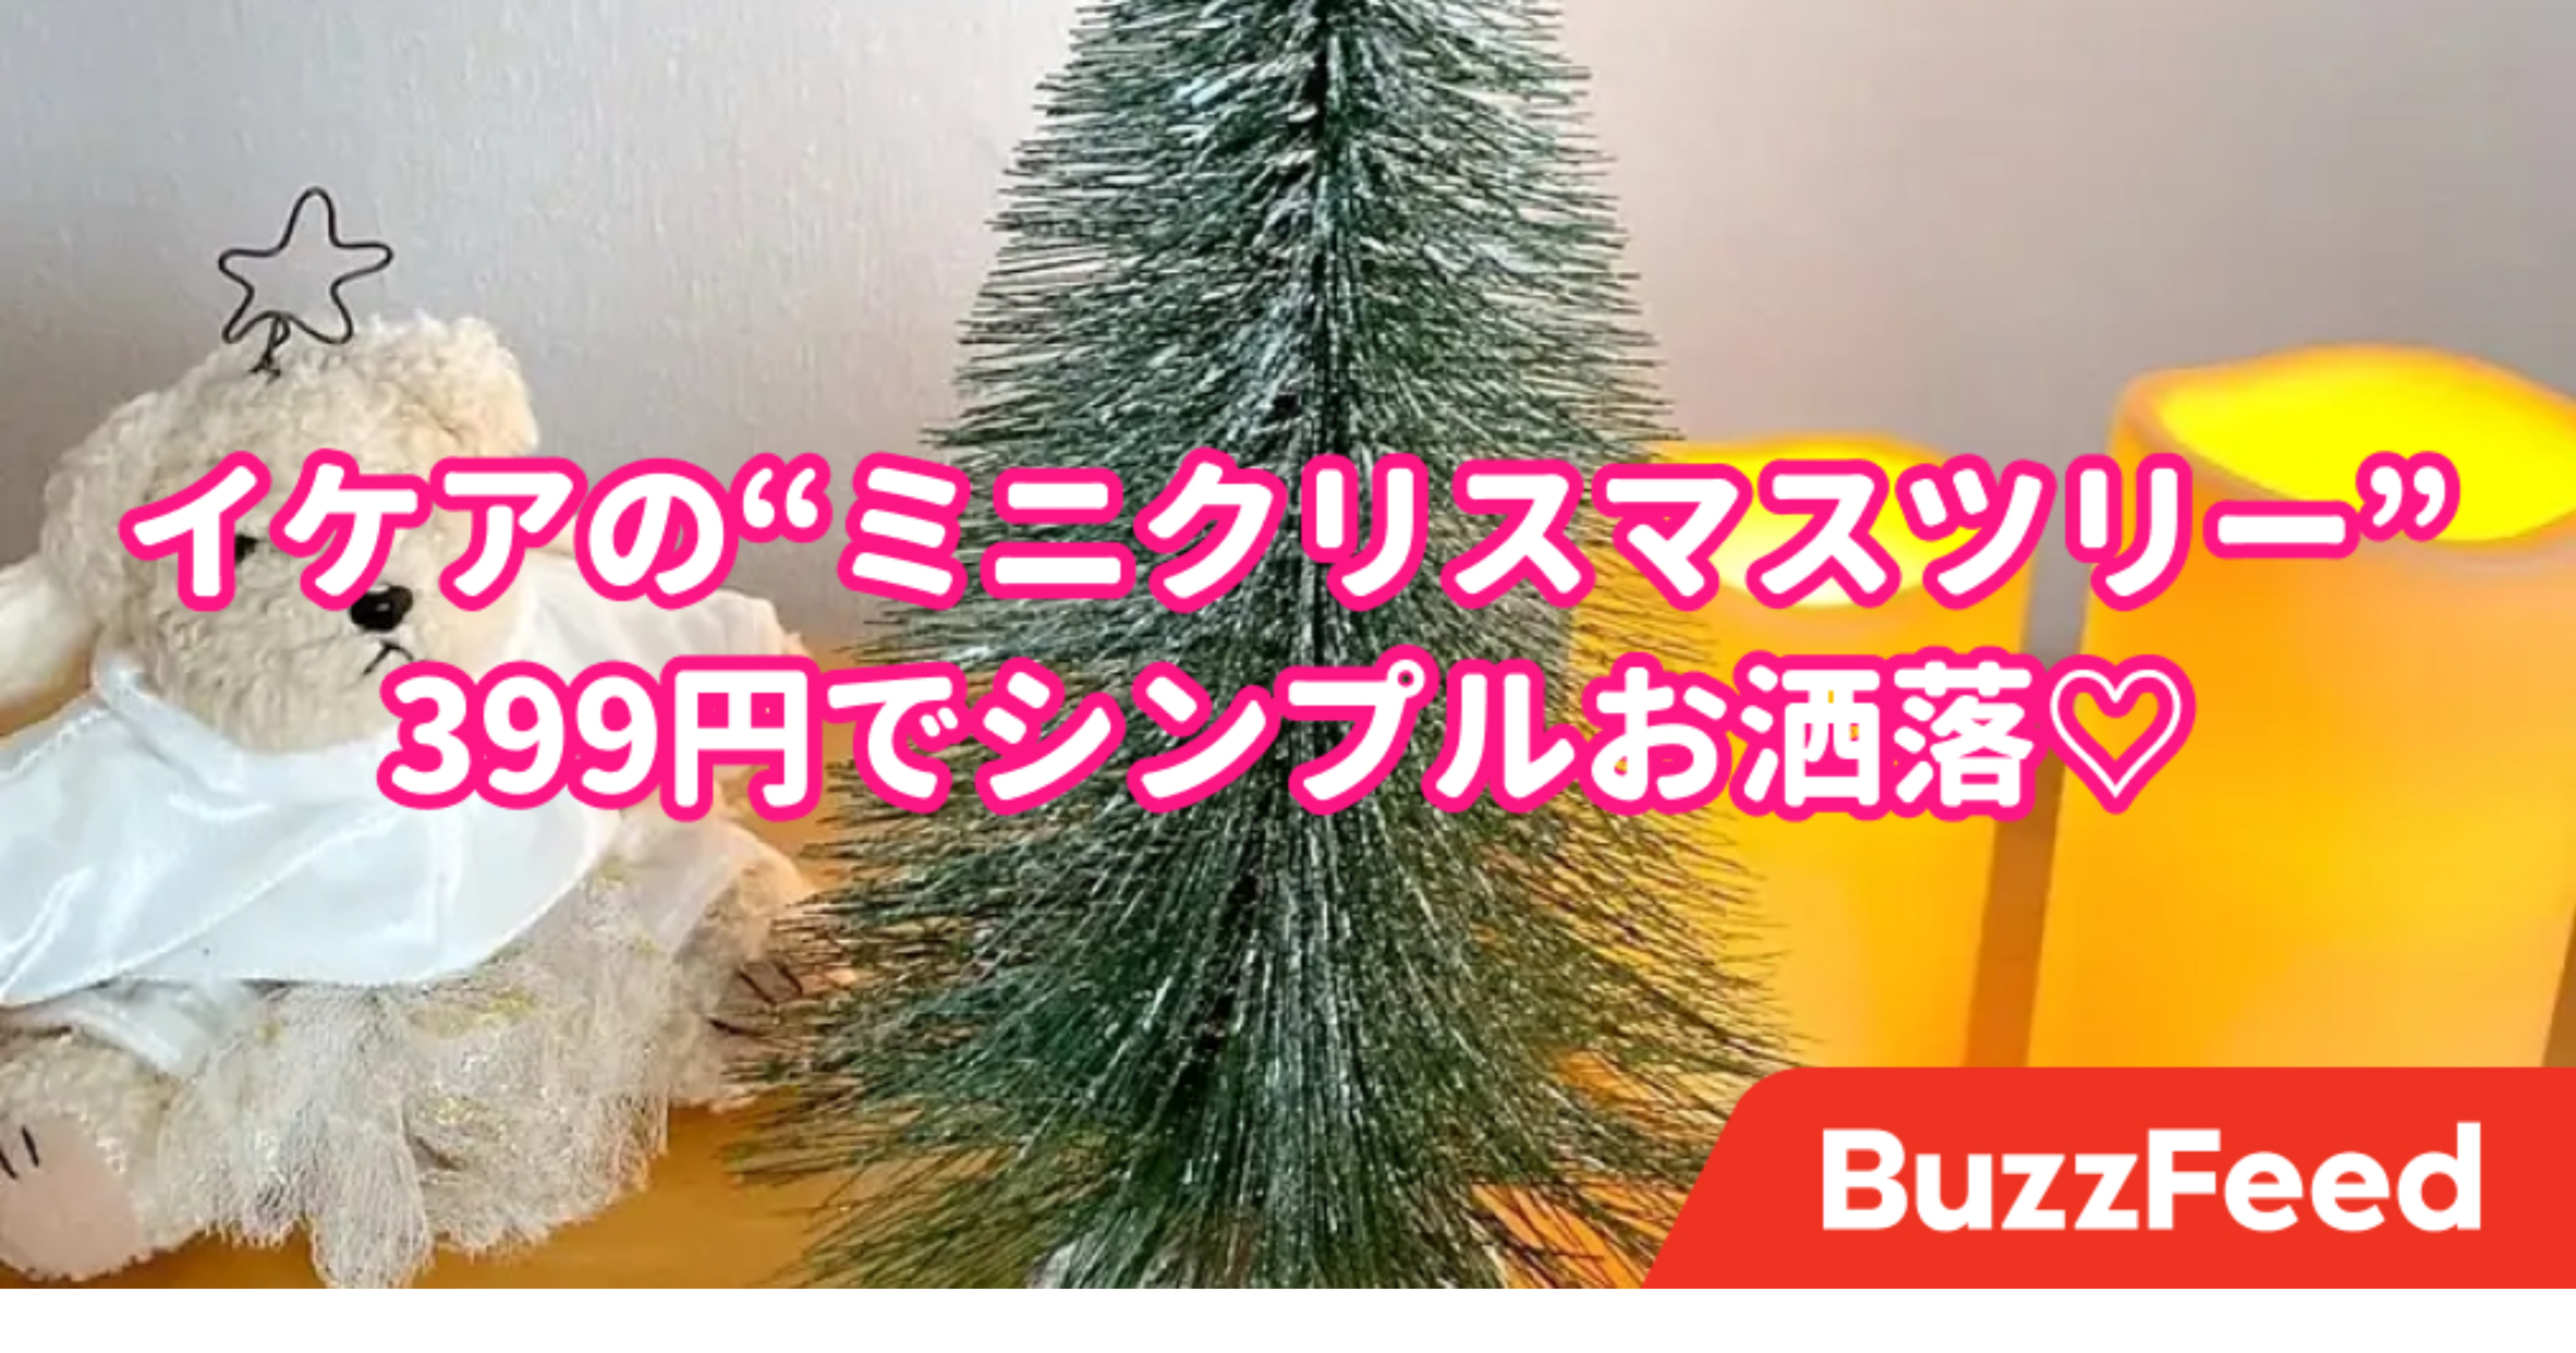 イケアさん、これコスパ良すぎでは？399円の「ミニクリスマスツリー」がシンプルでめっちゃ可愛い！